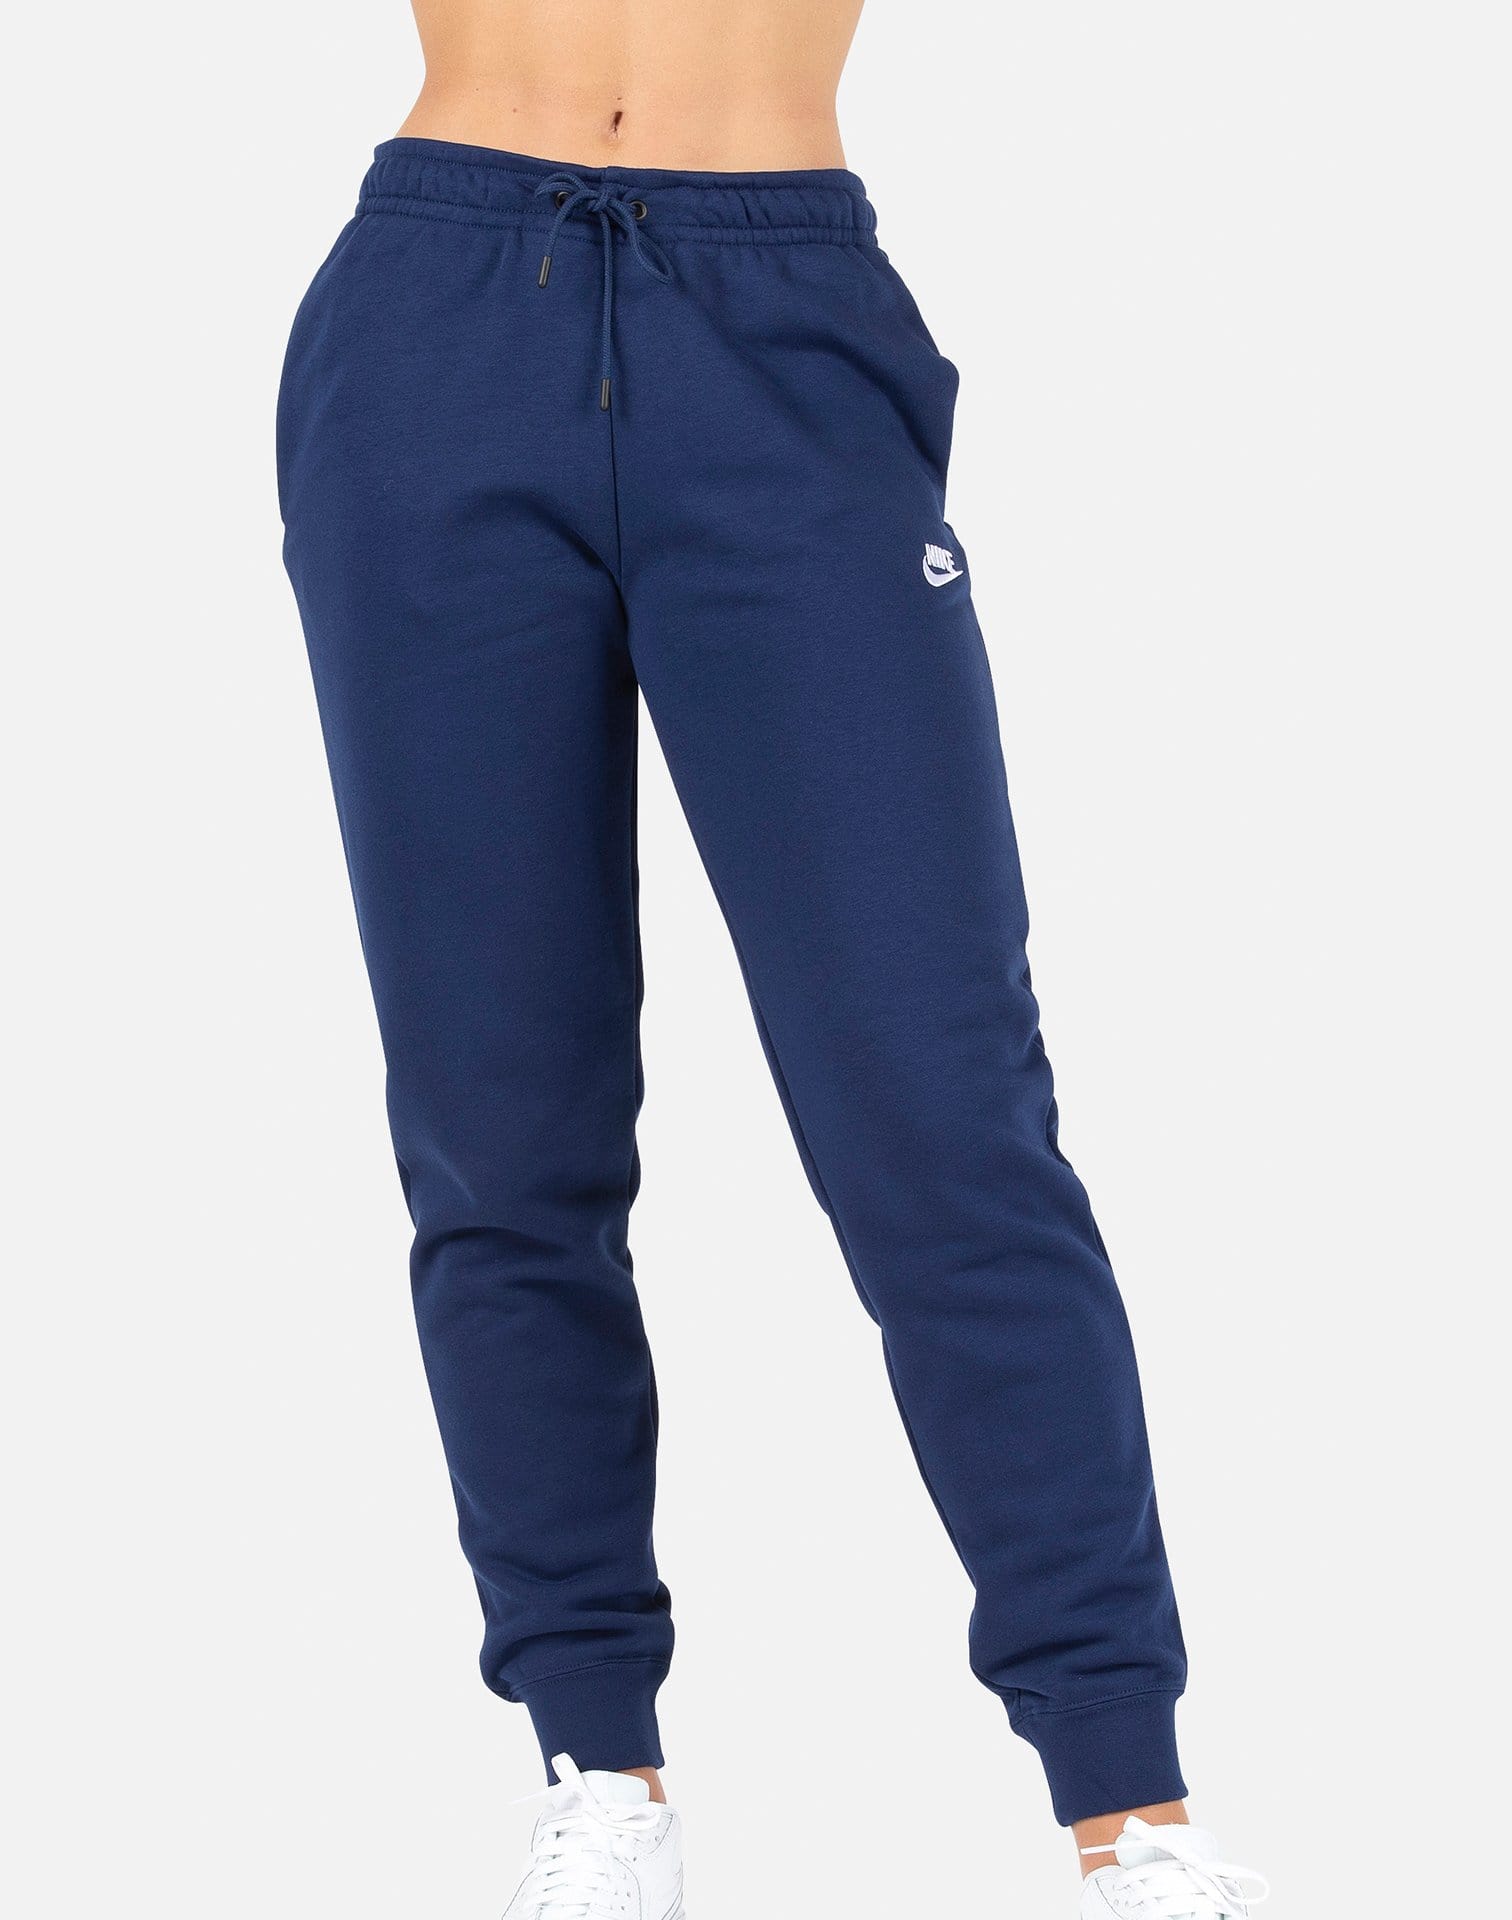 Nike Women's NSW Essential Fleece Pants